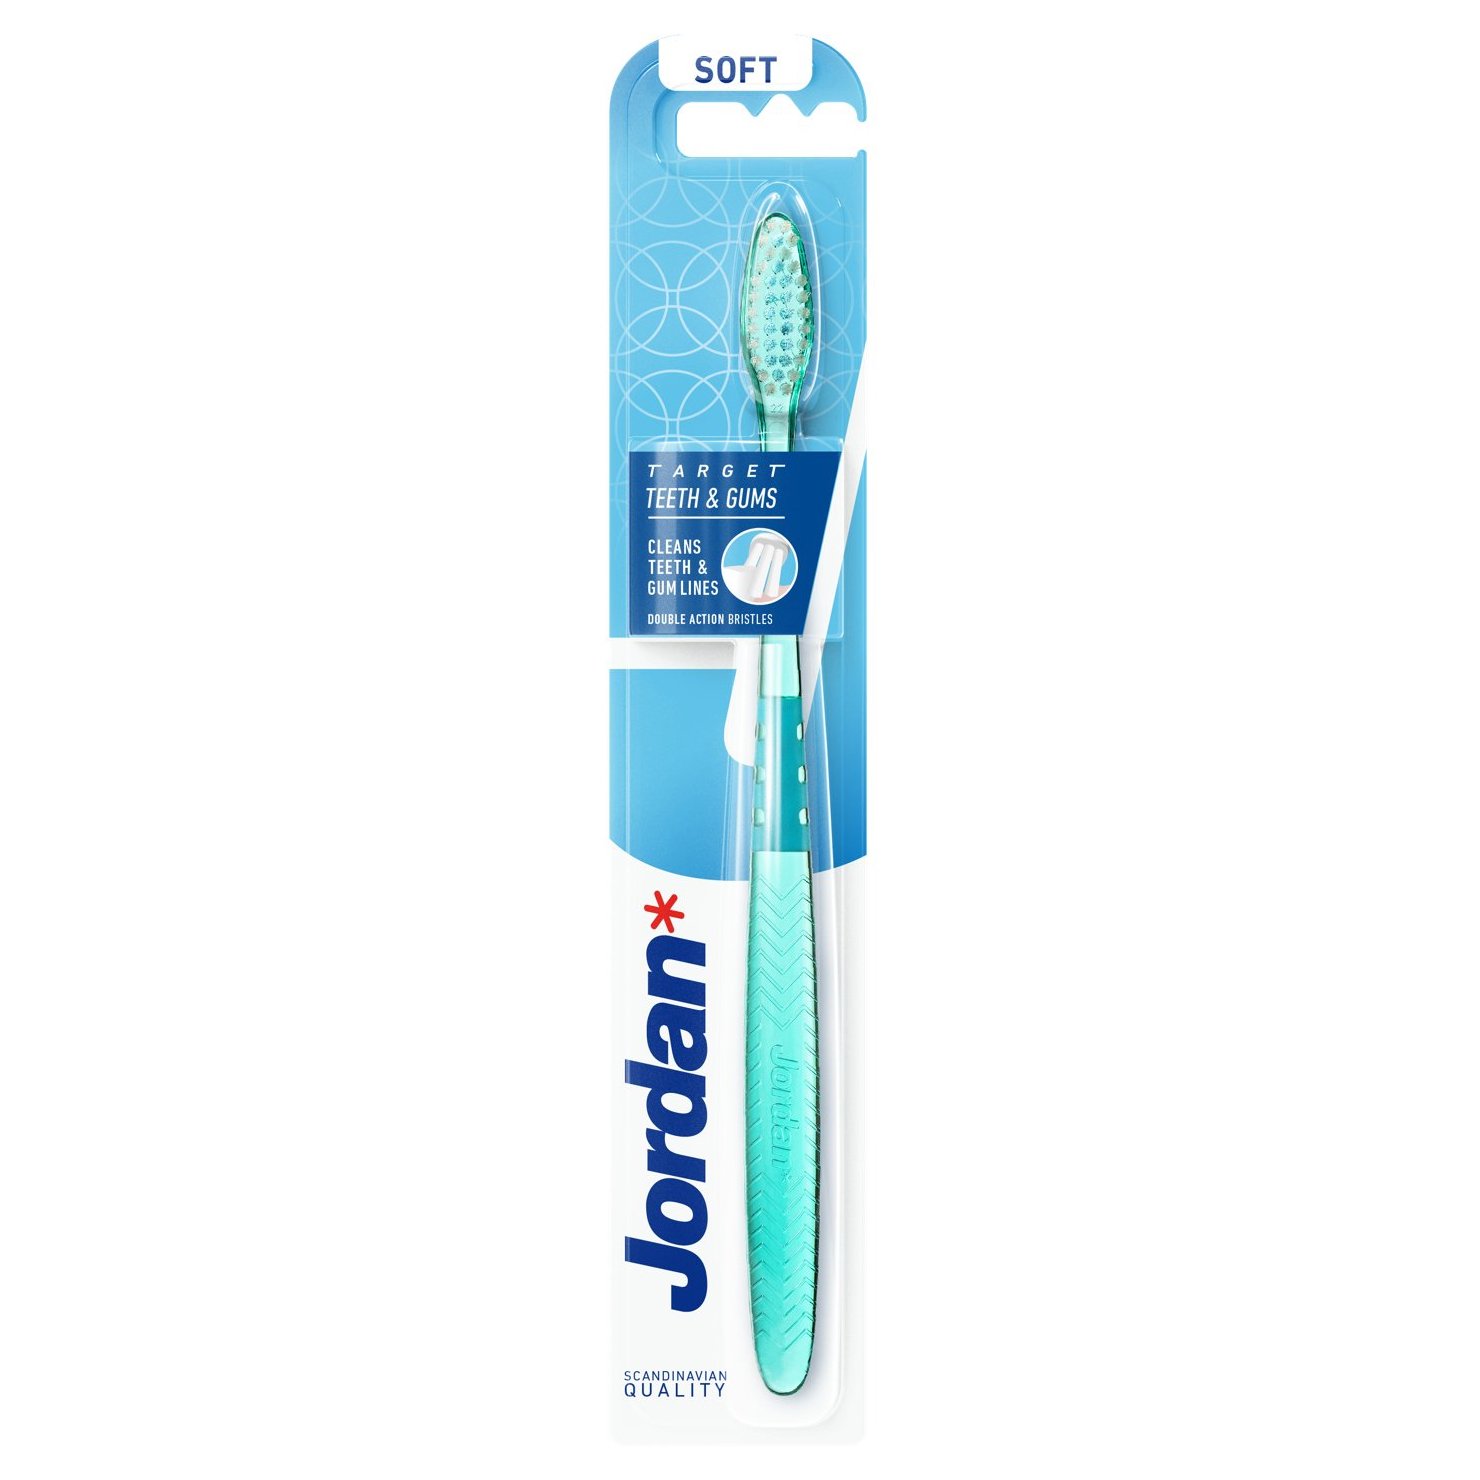 Jordan Target Teeth & Gums Toothbrush Soft Μαλακή Οδοντόβουρτσα για Βαθύ Καθαρισμό 1 Τεμάχιο – Τιρκουάζ